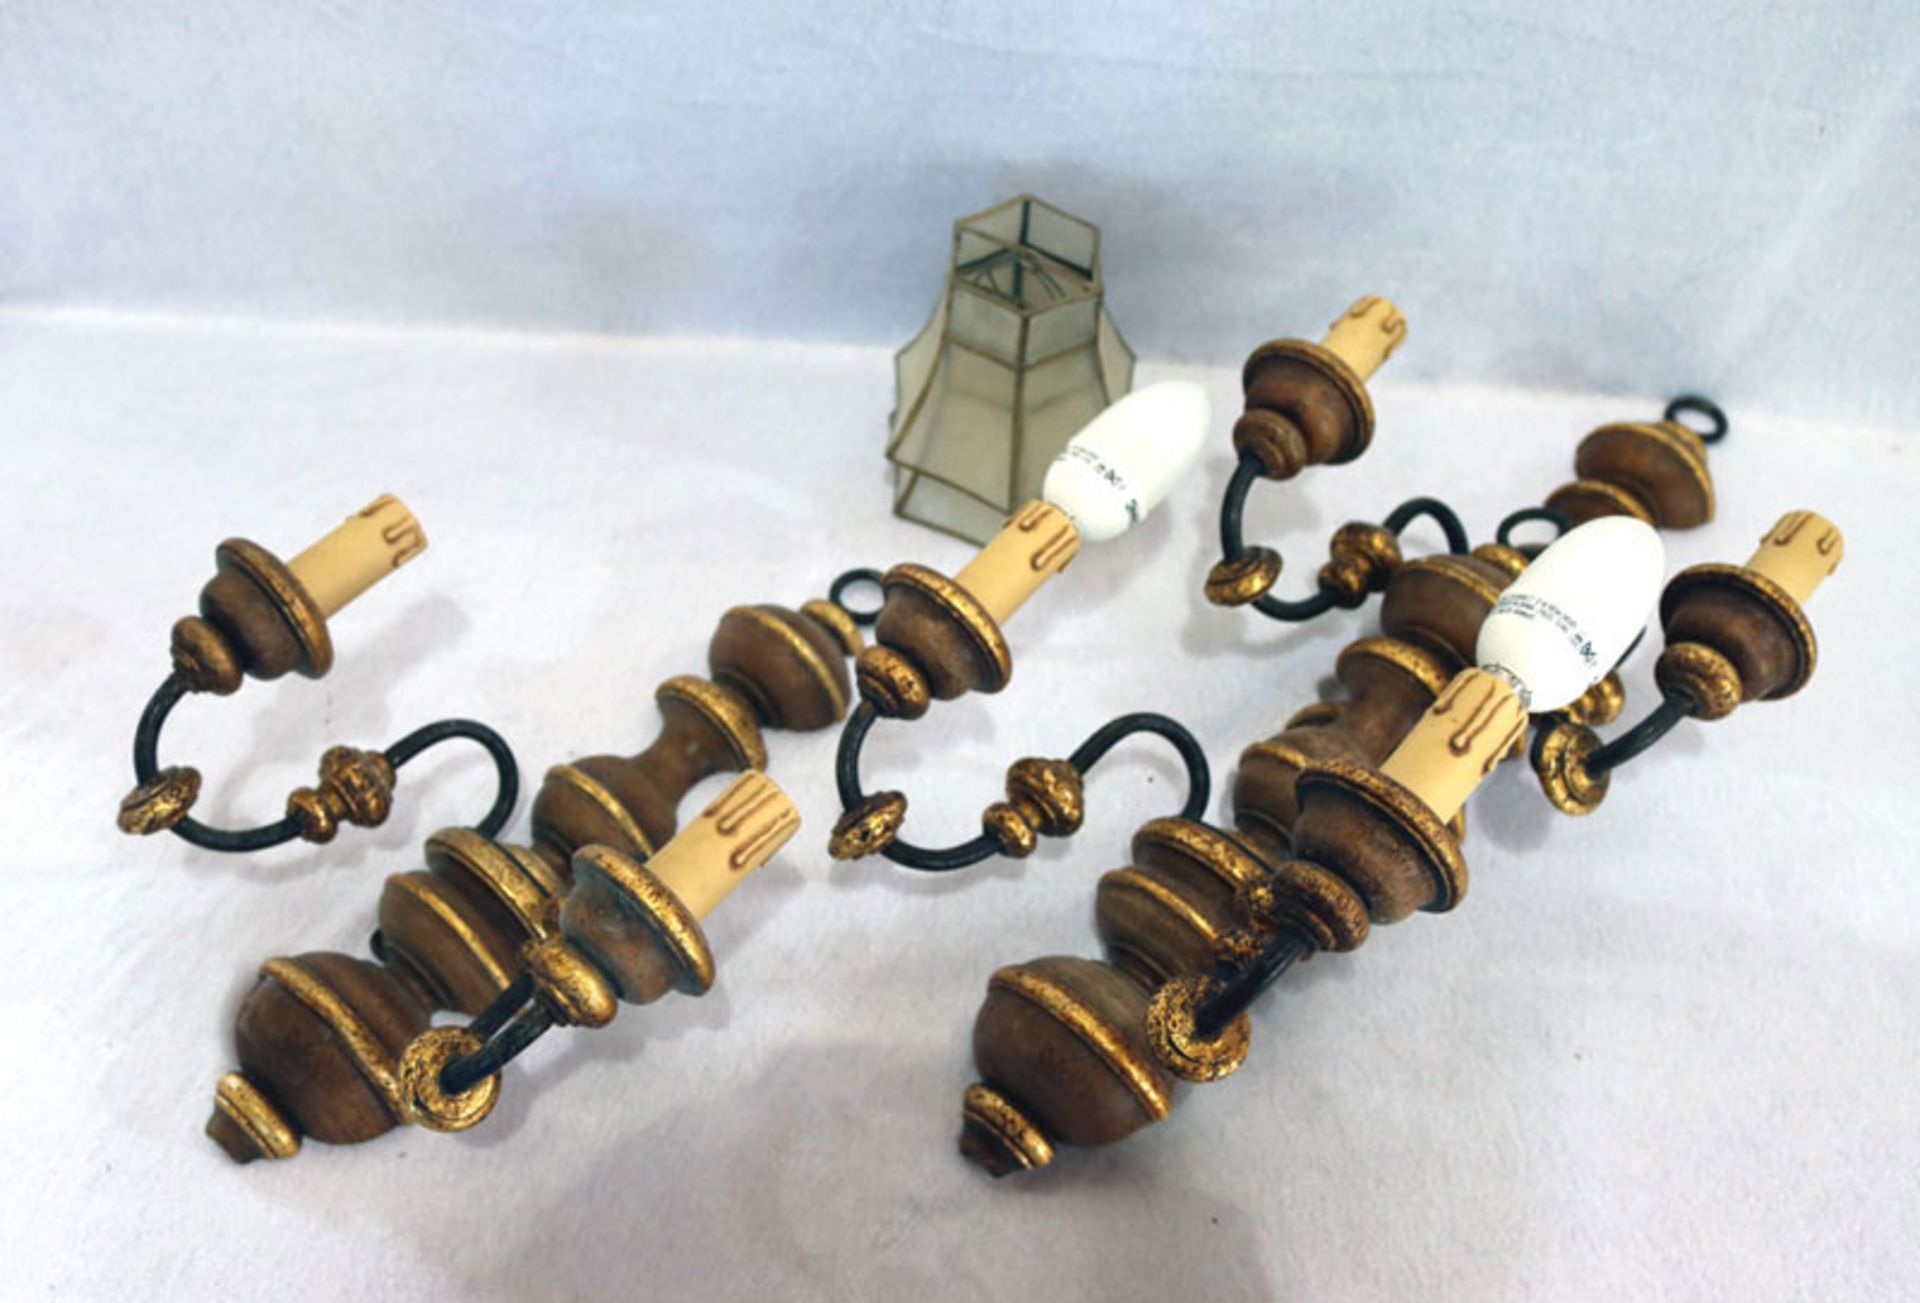 3 x 2-armige Wandlampen, braun/gold mit Schirmchen, 35 cm, B 26 cm, T 13 cm, Gebrauchsspuren